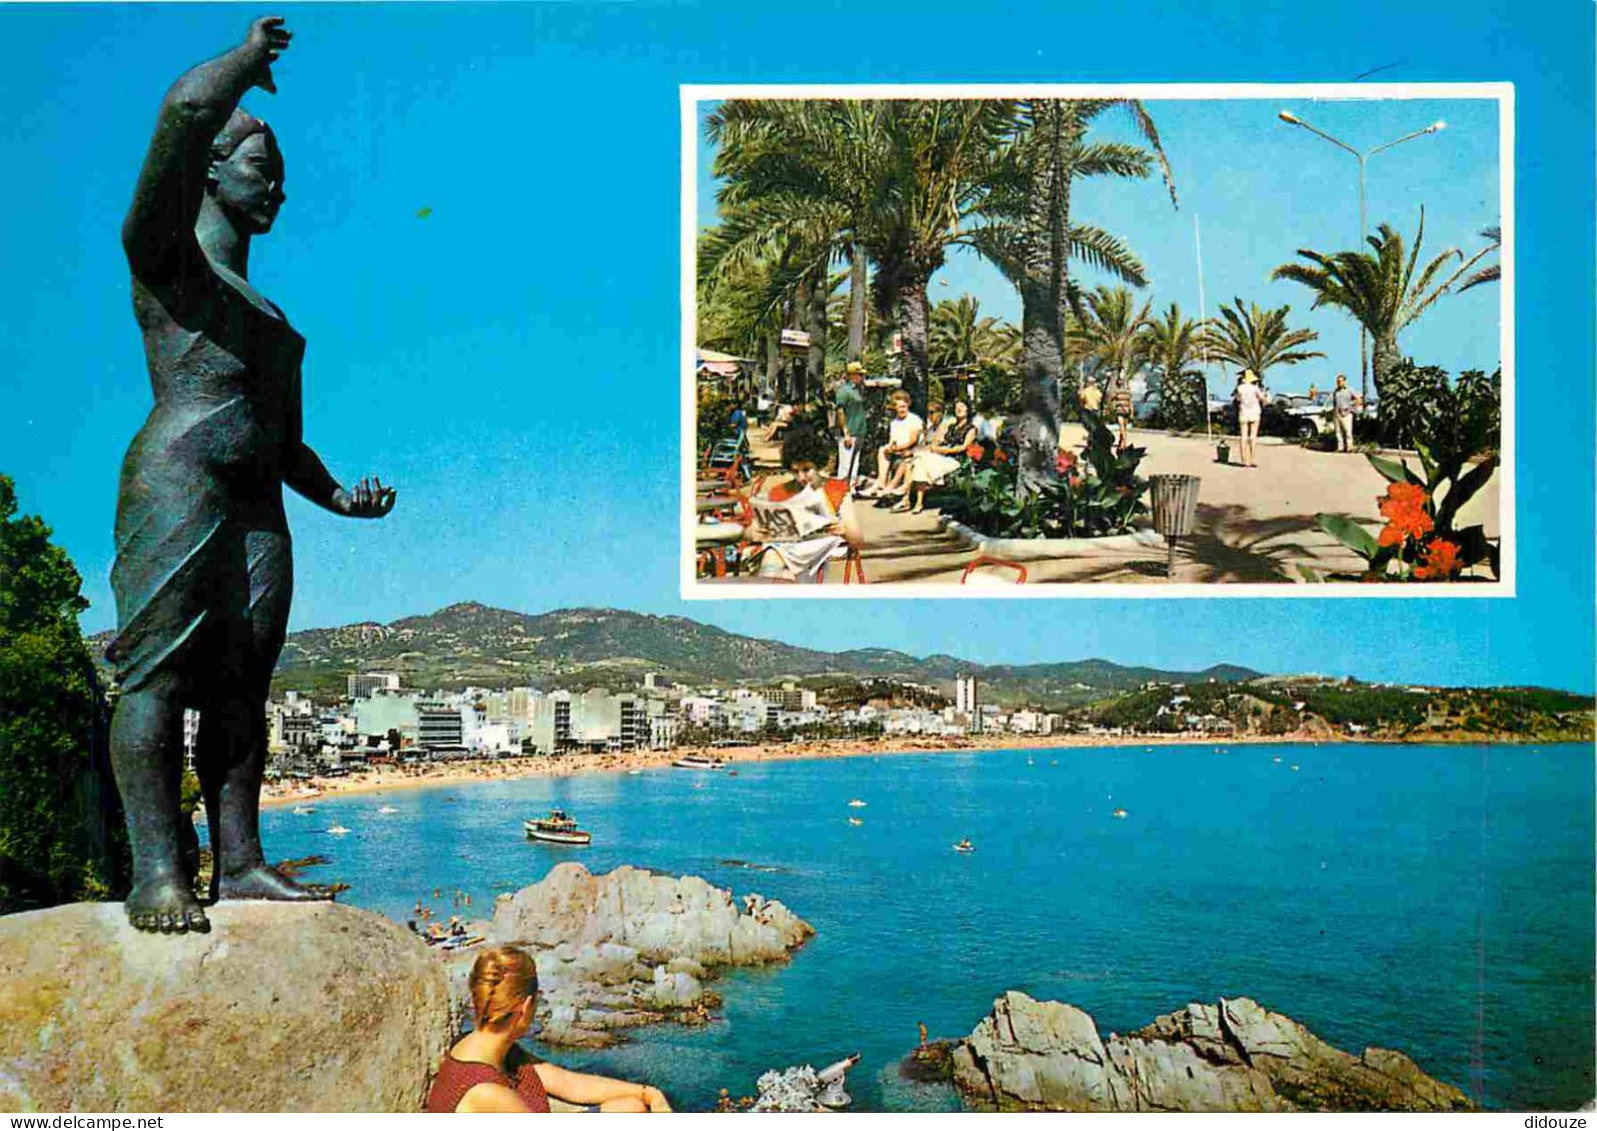 Espagne - Espana - Cataluna - Costa Brava - Lloret De Mar - Multivues - Monumento A La Mujer Marinera Y Detalle Paseo -  - Gerona